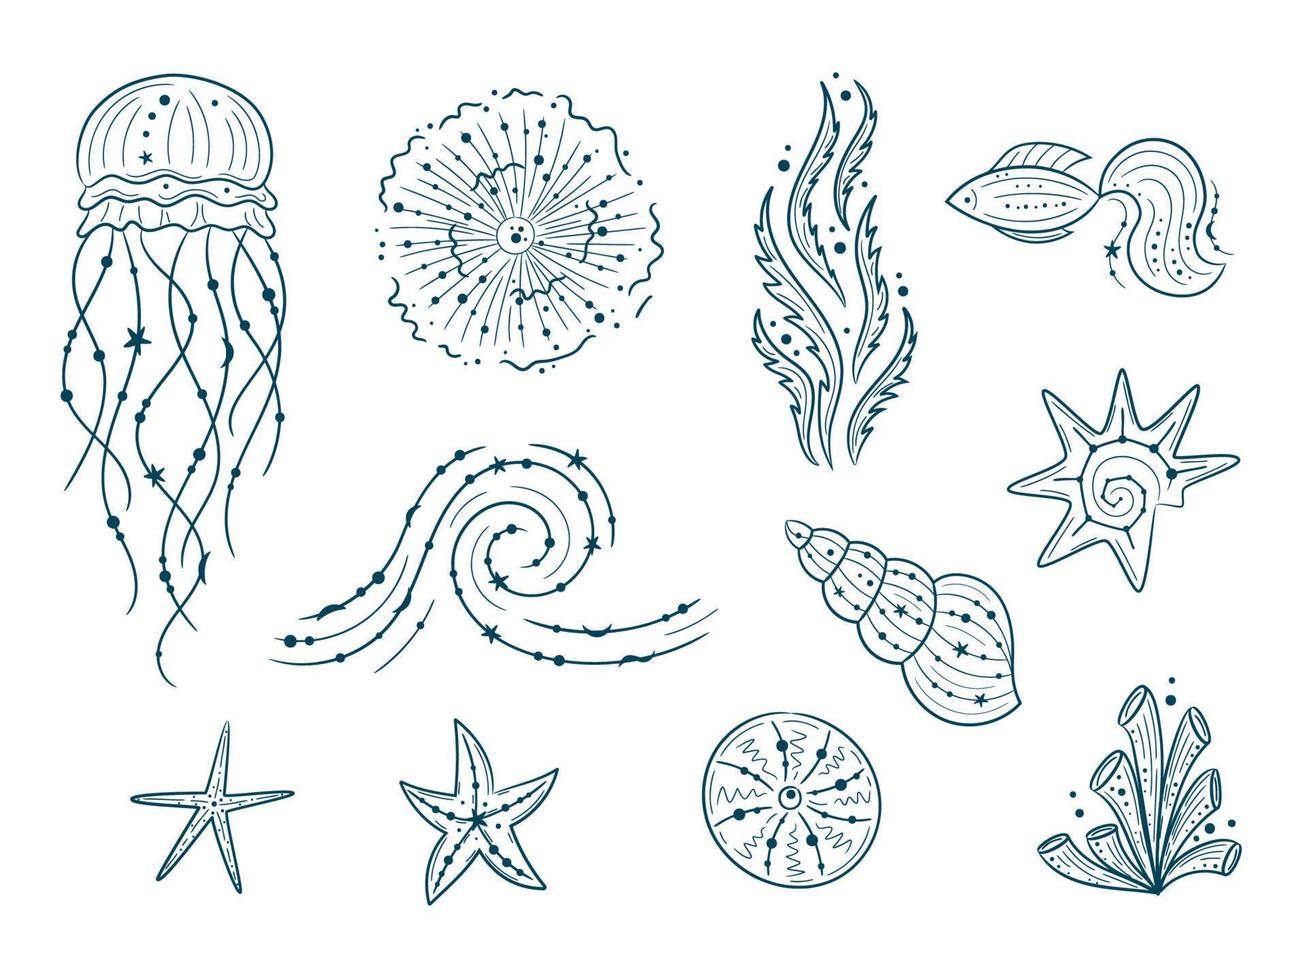 siluetas del contorno de la vida marina aislado sobre fondo blanco. ilustraciones vectoriales dibujadas a mano de línea grabada. colección de bocetos de medusas, peces, algas, conchas marinas vector